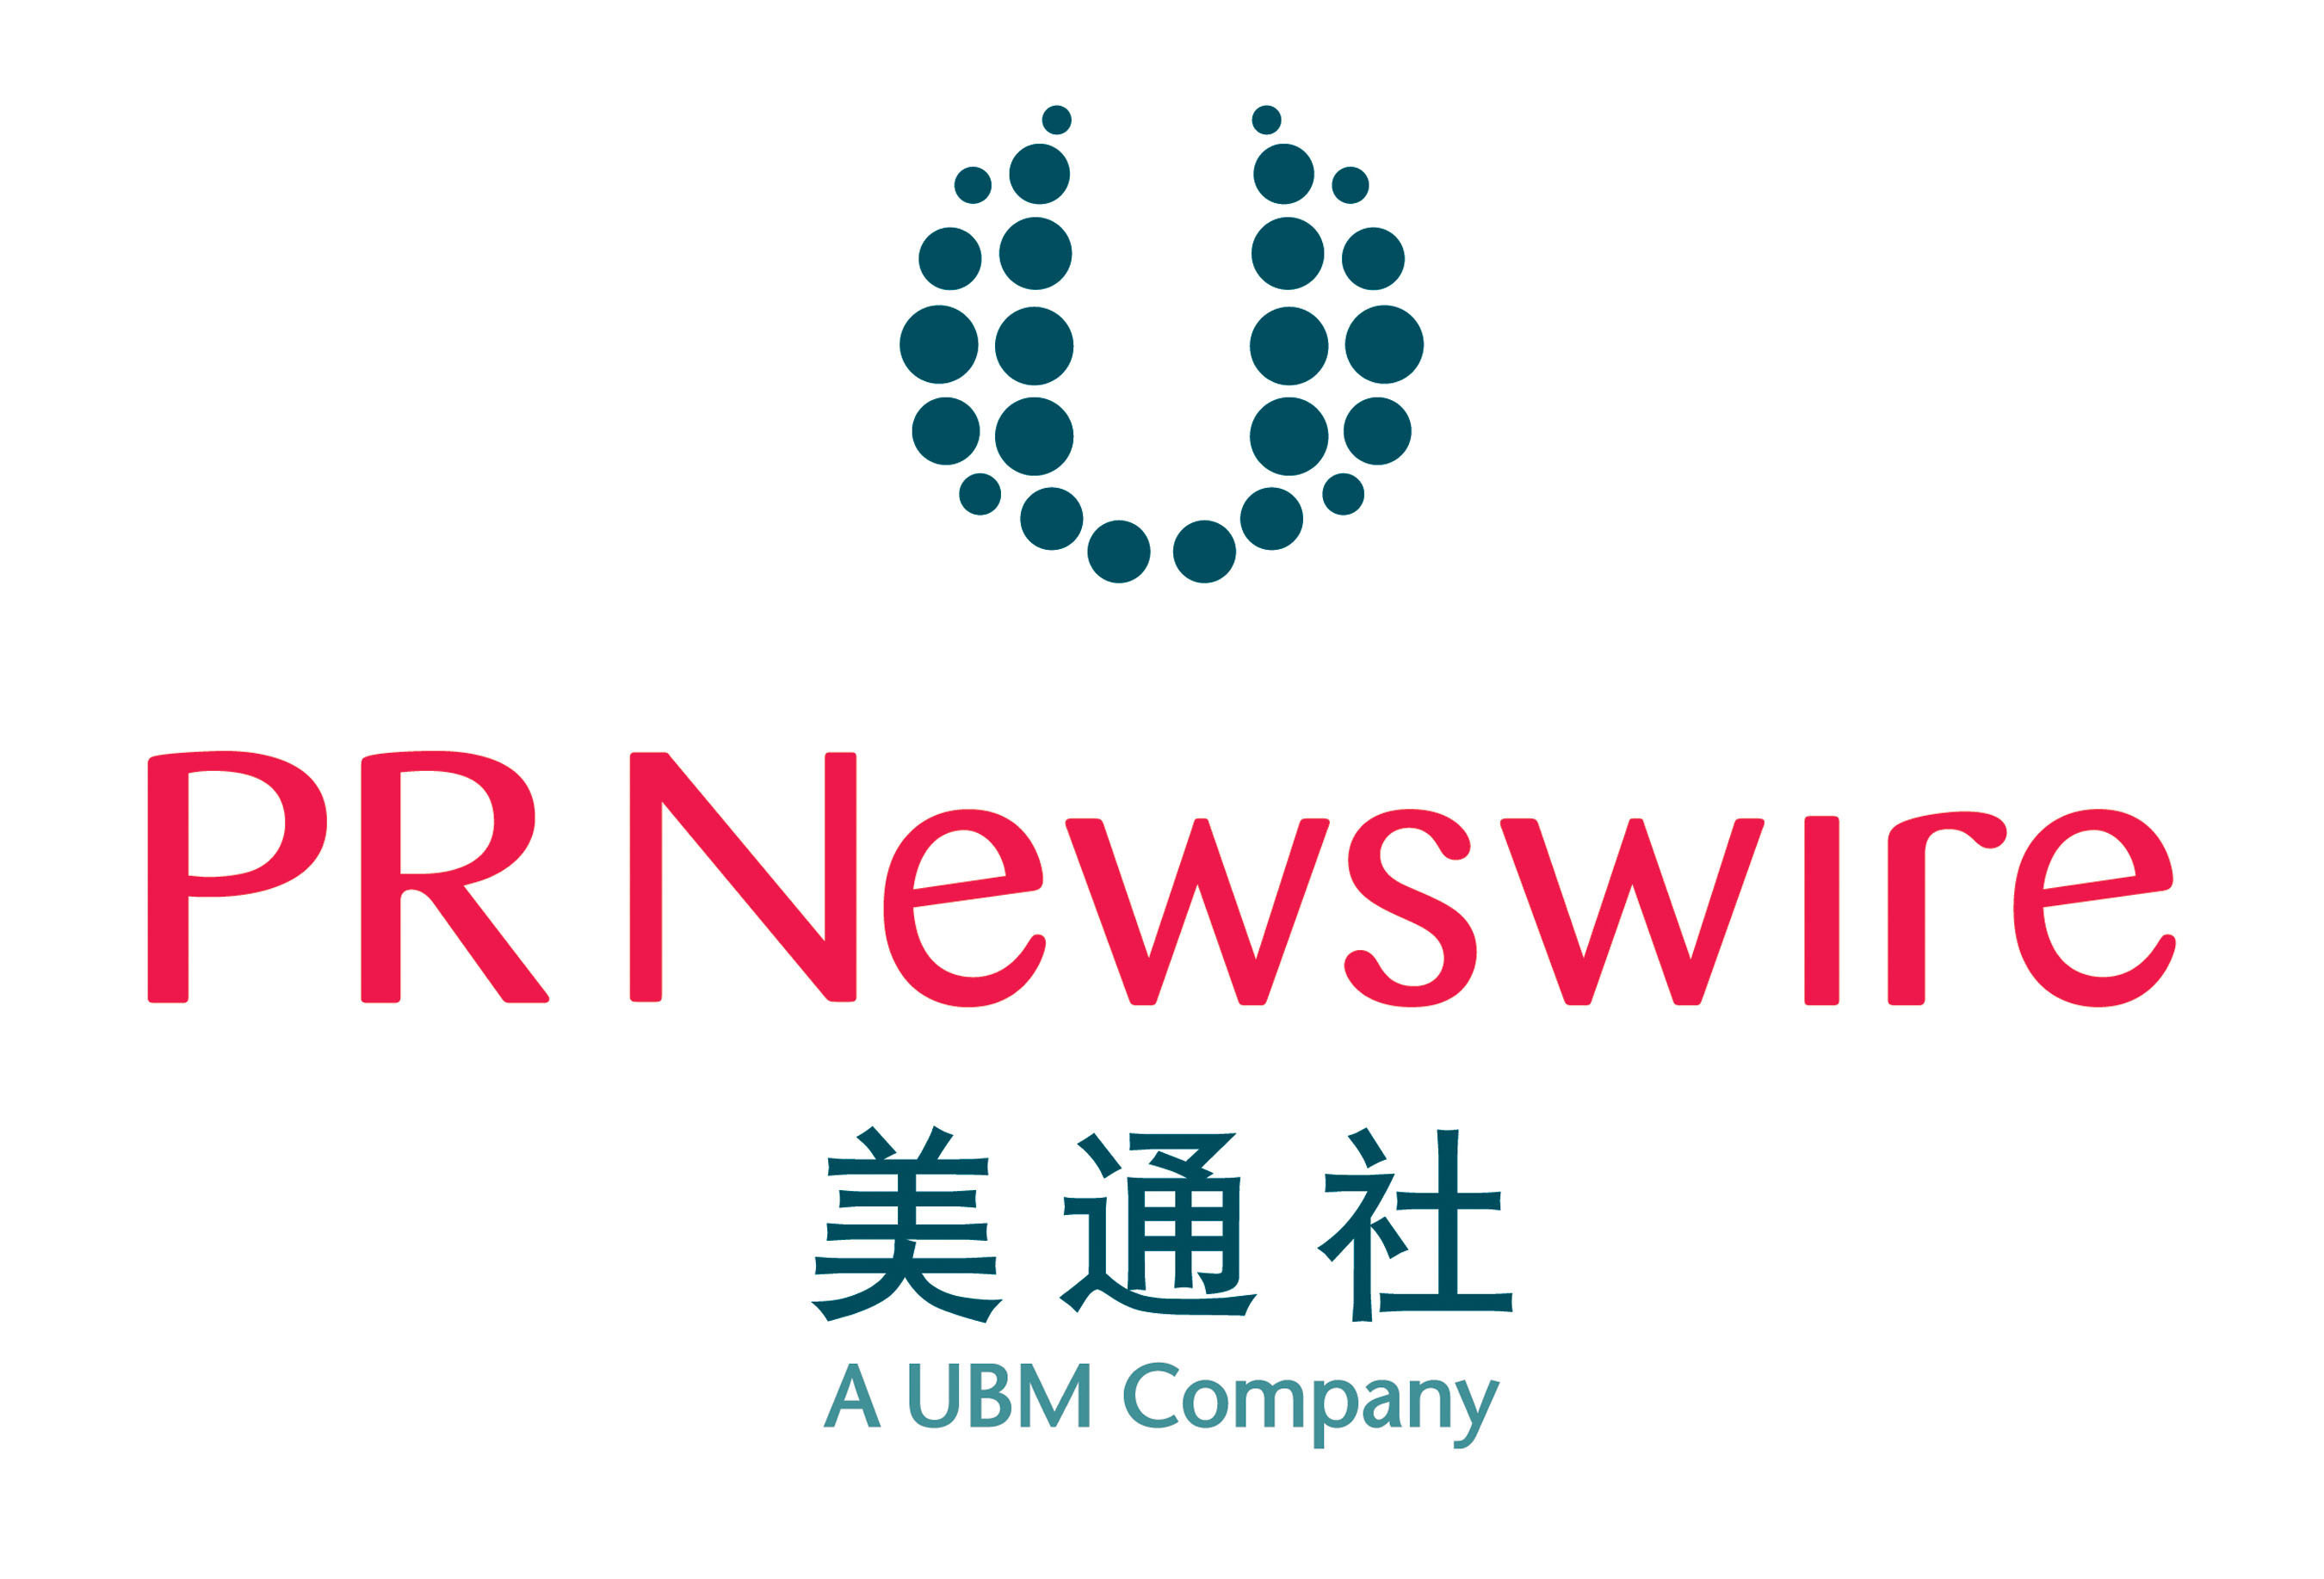 PR Newswire logo. (PRNewsFoto/PR Newswire) (PRNewsFoto/)